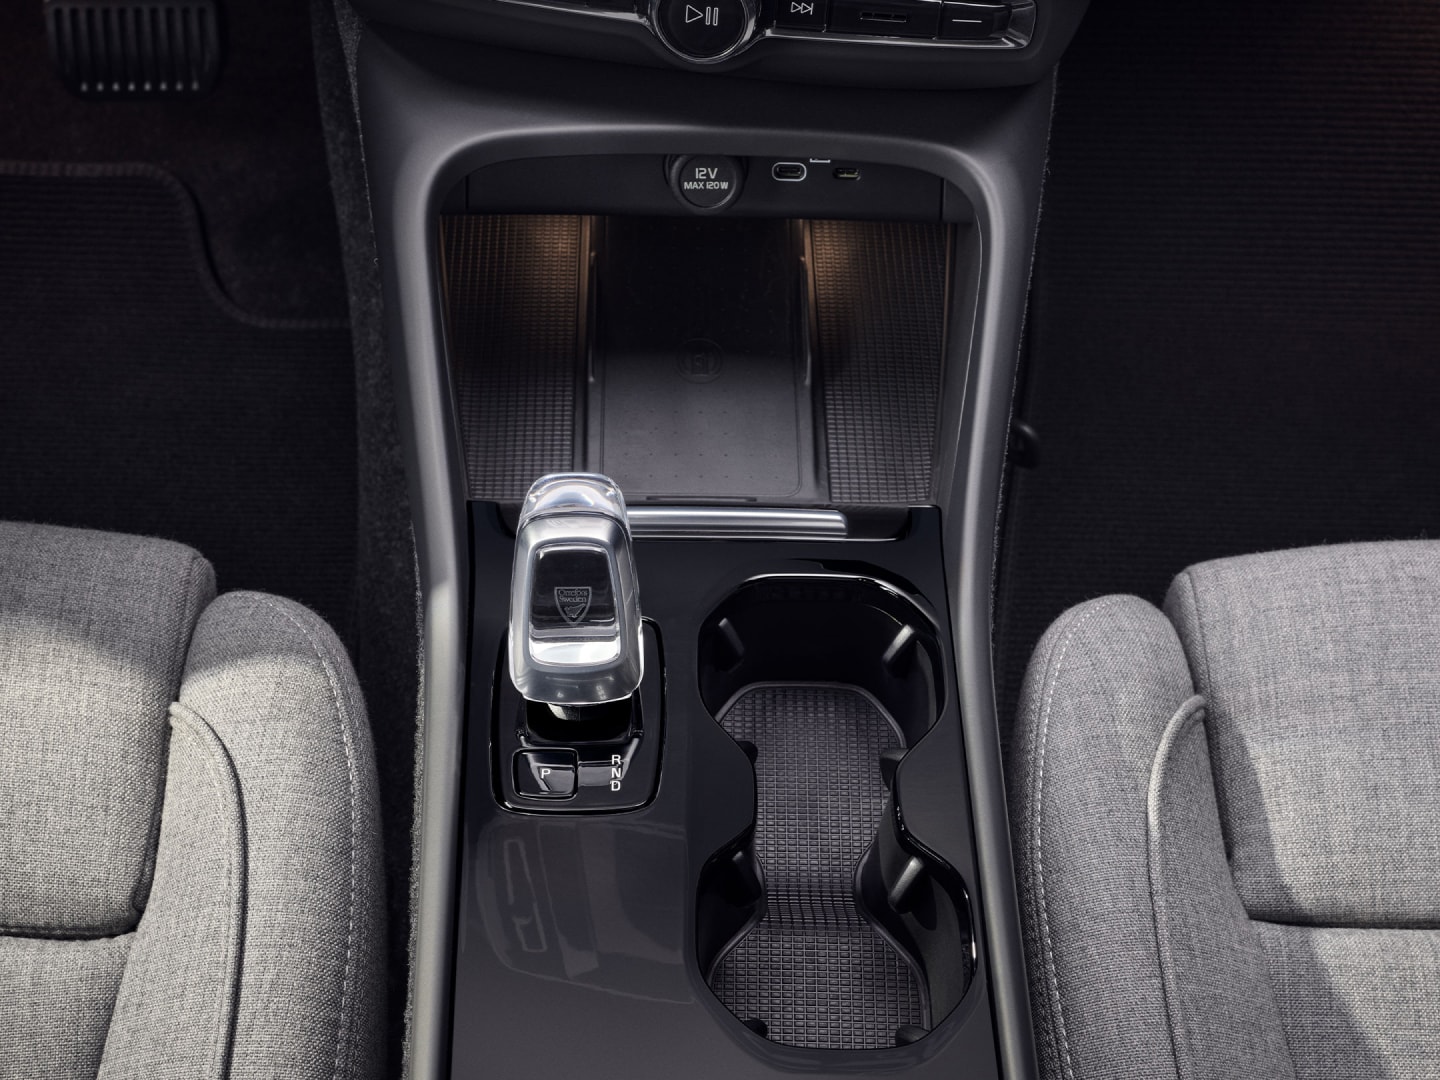 De bekerhouder, versnellingspook en draadloze oplader zijn tussen de voorstoelen van de volledig elektrische Volvo EC40 geplaatst.